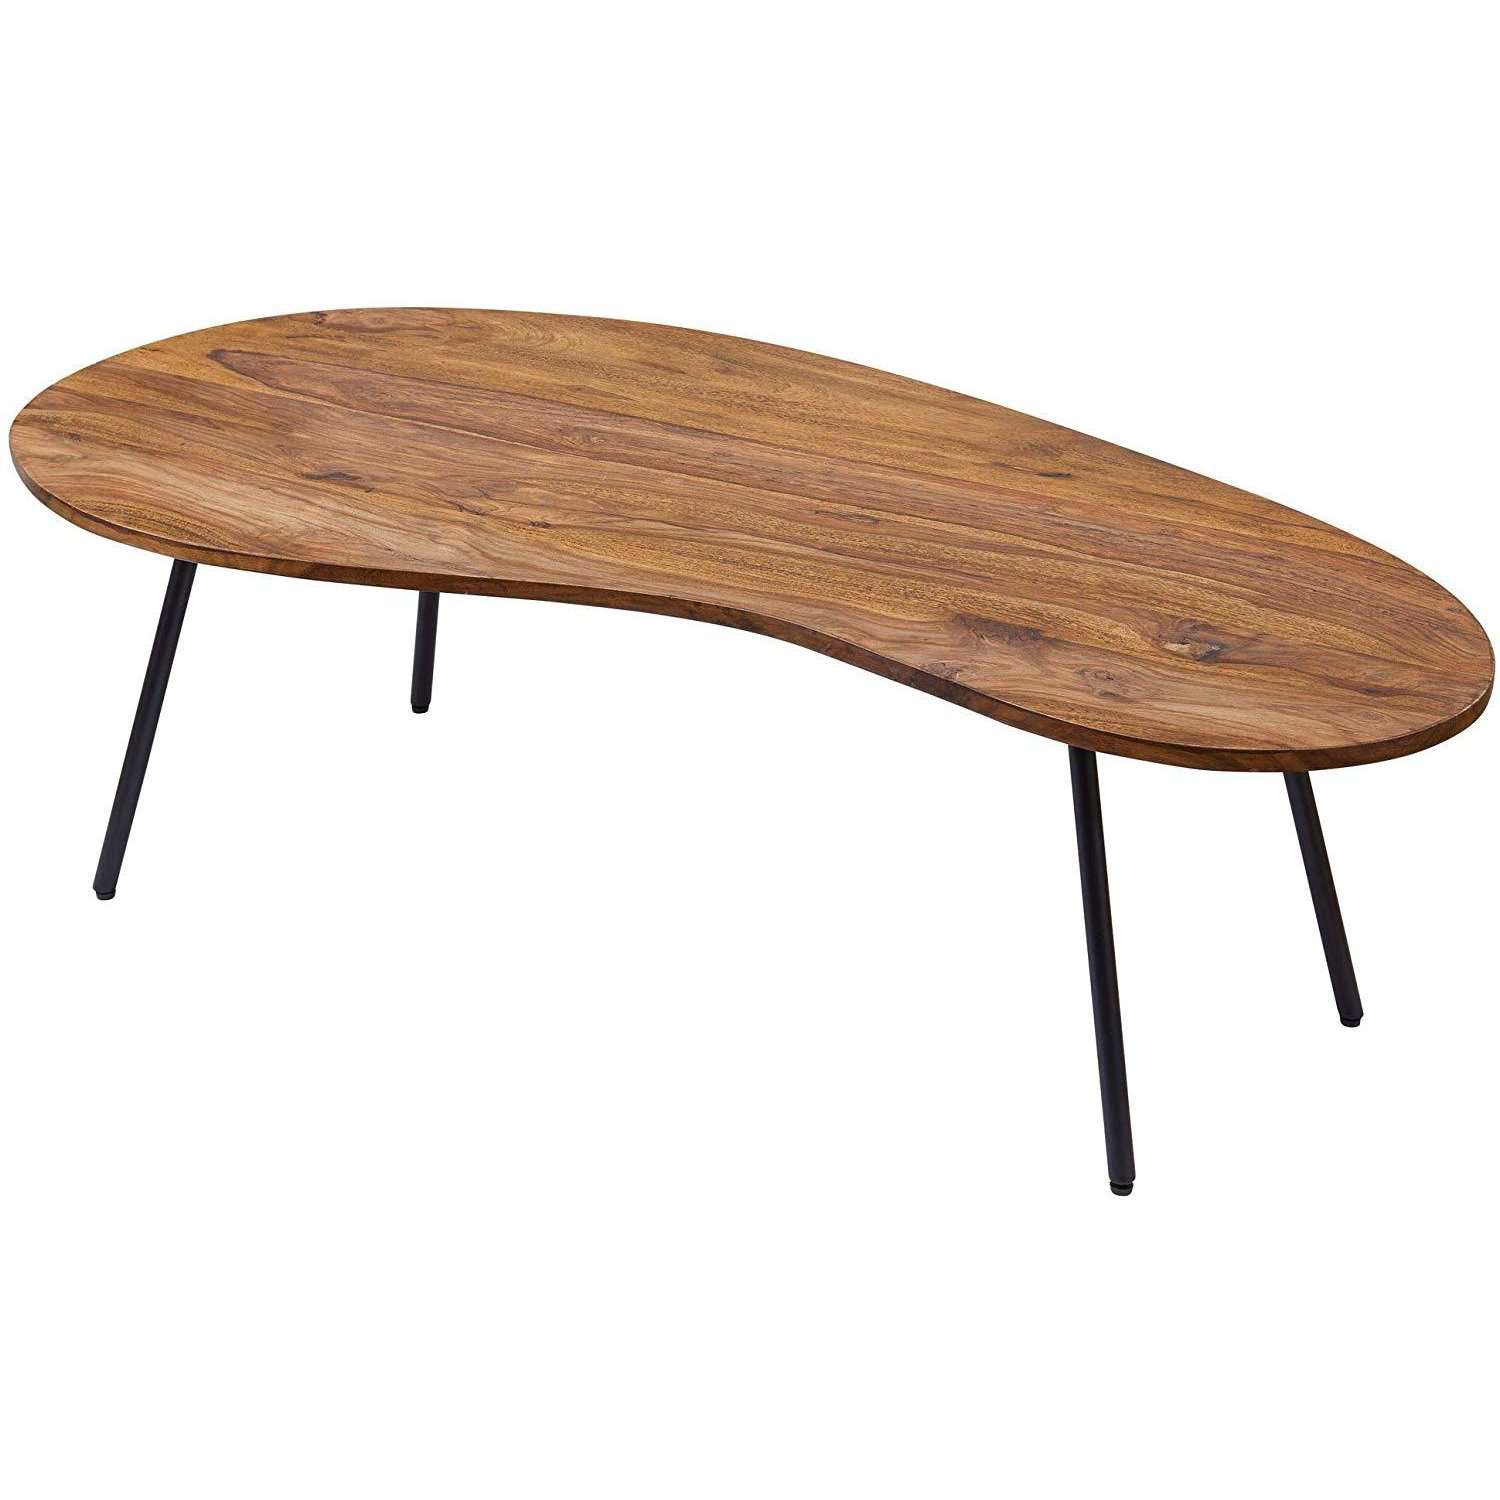 Table basse en bois de Nancy - Table plate moderne - Table en tronc d'arbre - Table - Bois de Sheesham - 122 x 36 x 63 cm